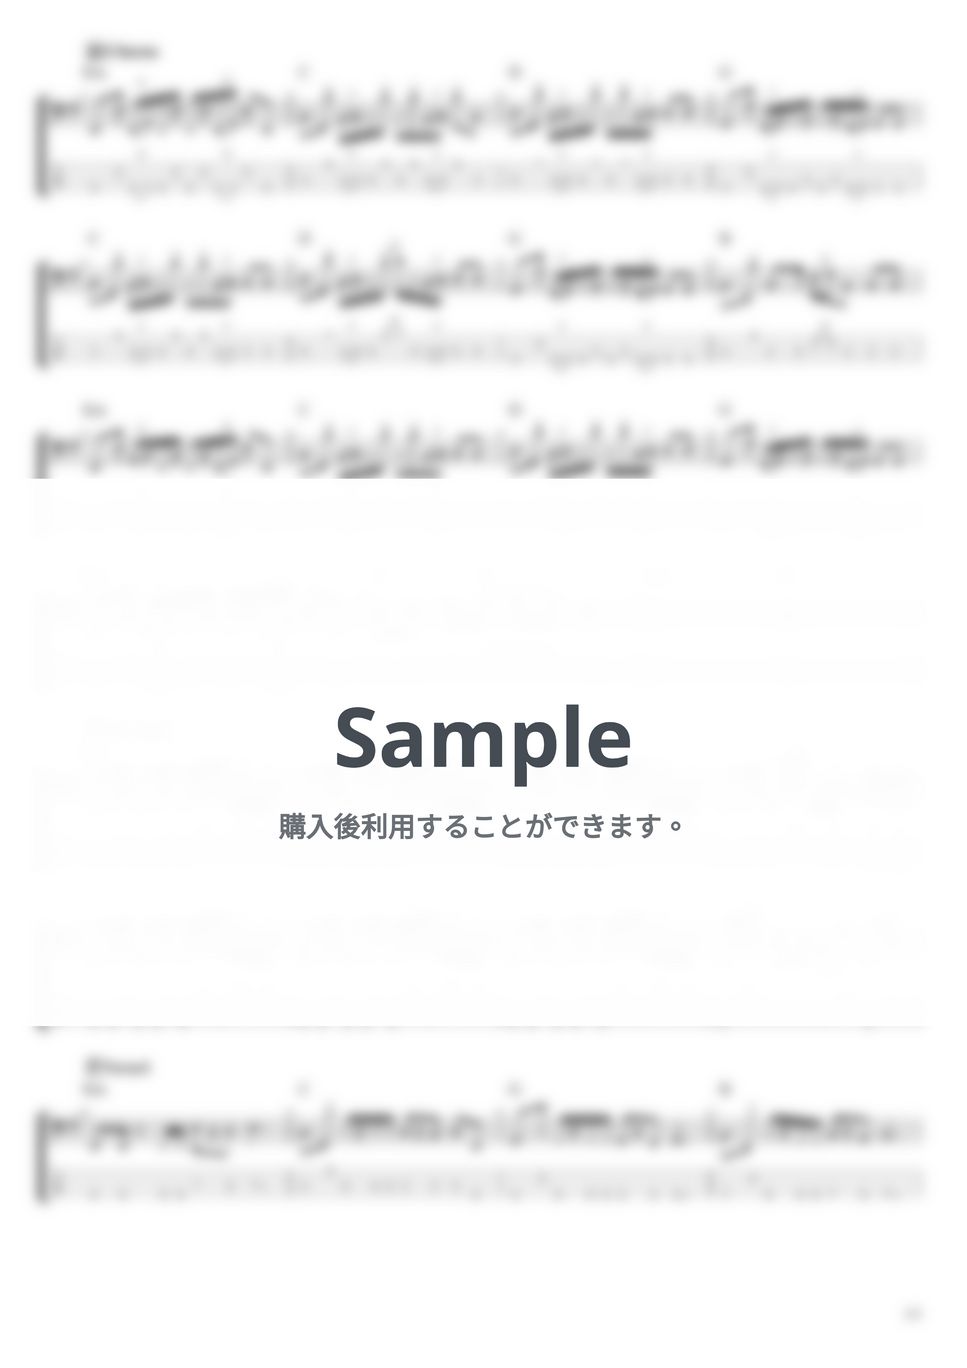 天野月子 - 青紫 (ベース Tab譜 4弦) by T's bass score